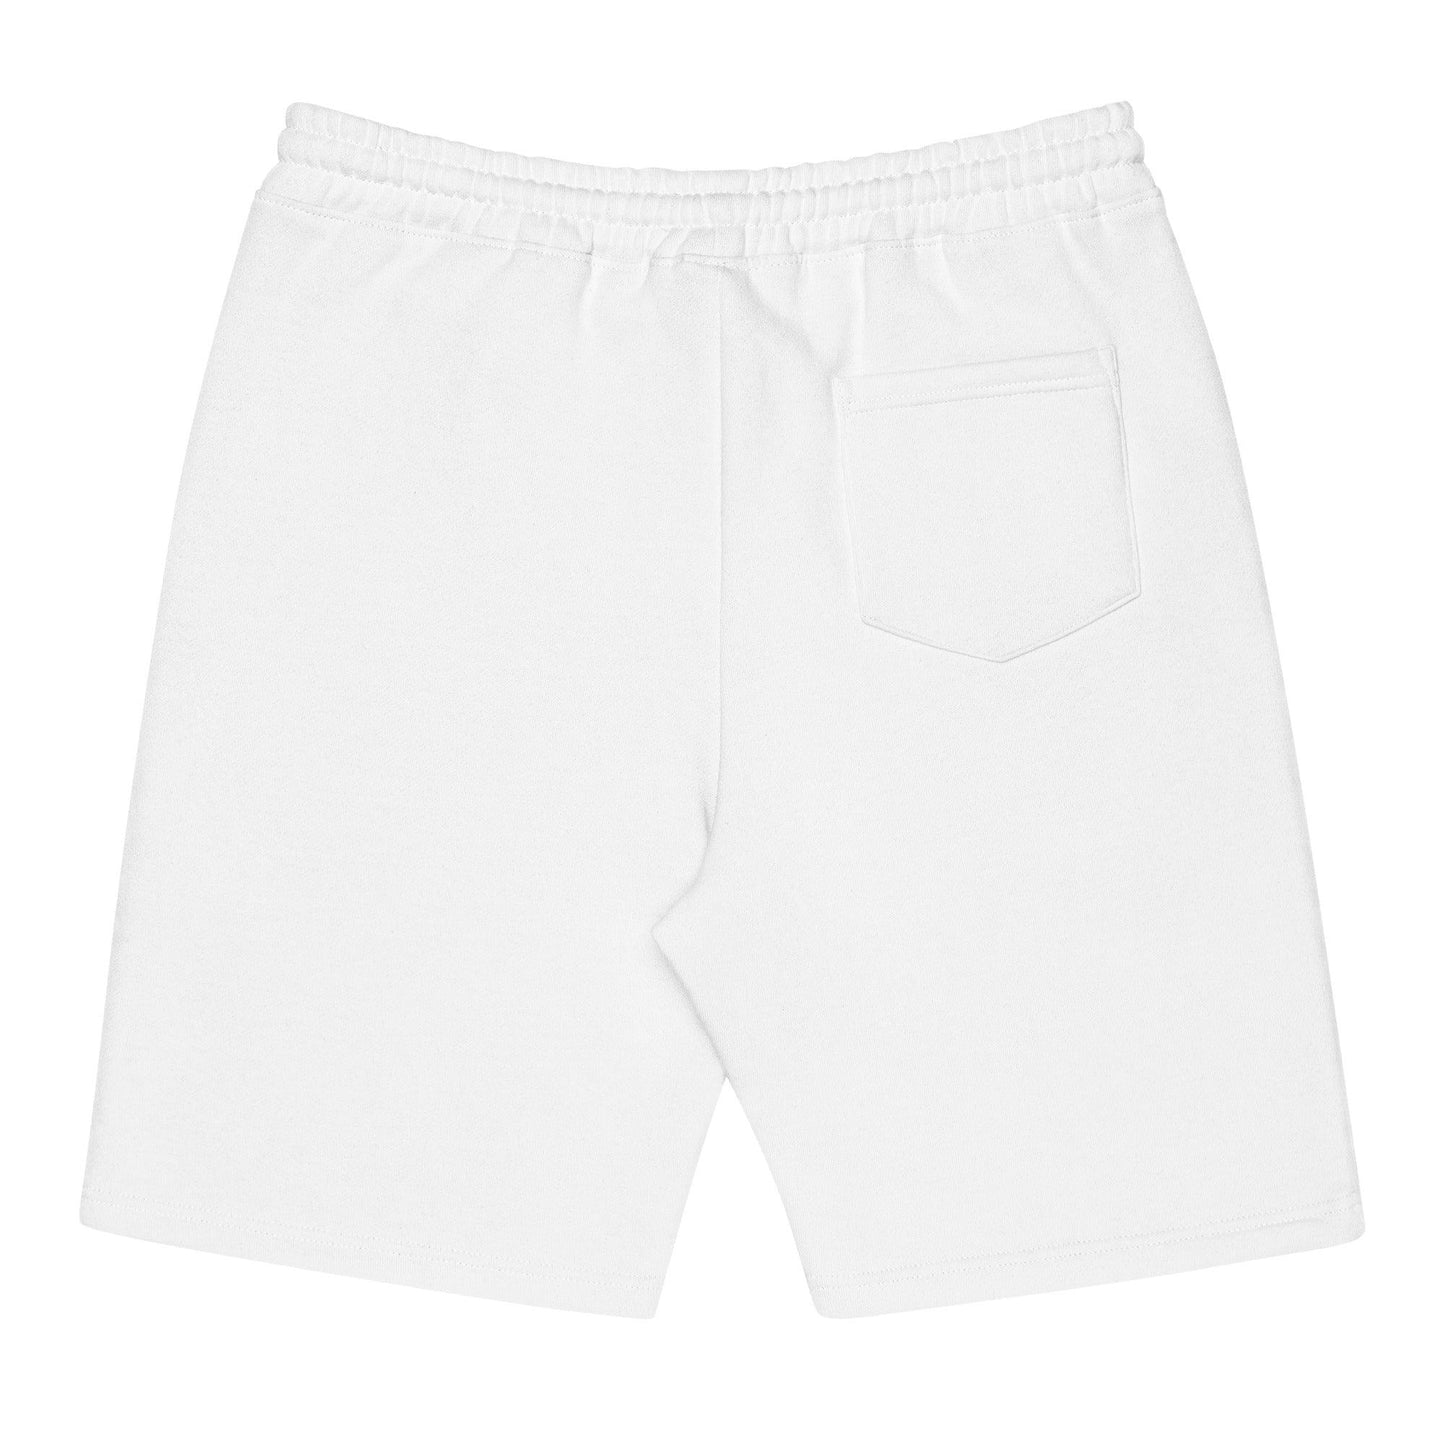 Destiny Battle "Royalty" Men's fleece shorts - Fan Arch